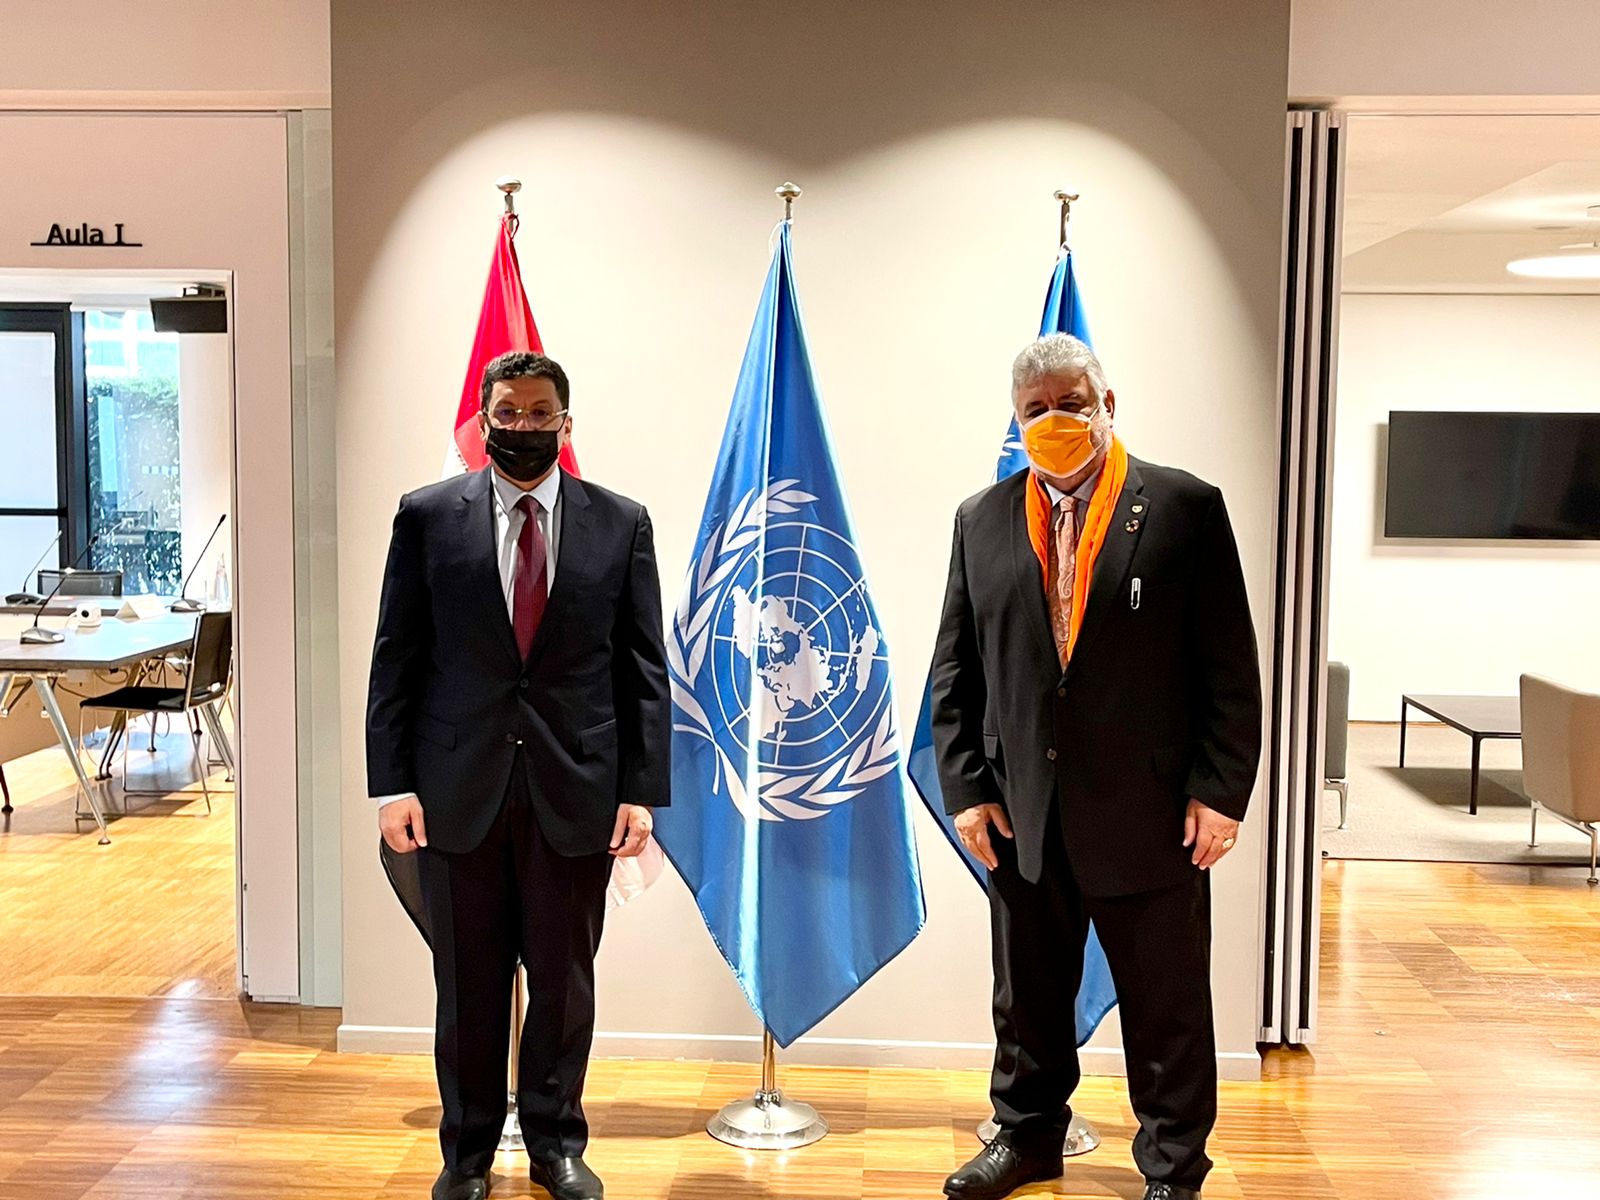 وزير الخارجية اليمني أحمد عوض بن مبارك خلال لقائه نائب المدير التنفيذي لبرنامج الأغذية العالمي أمير عبدالله في روما (سبأ)